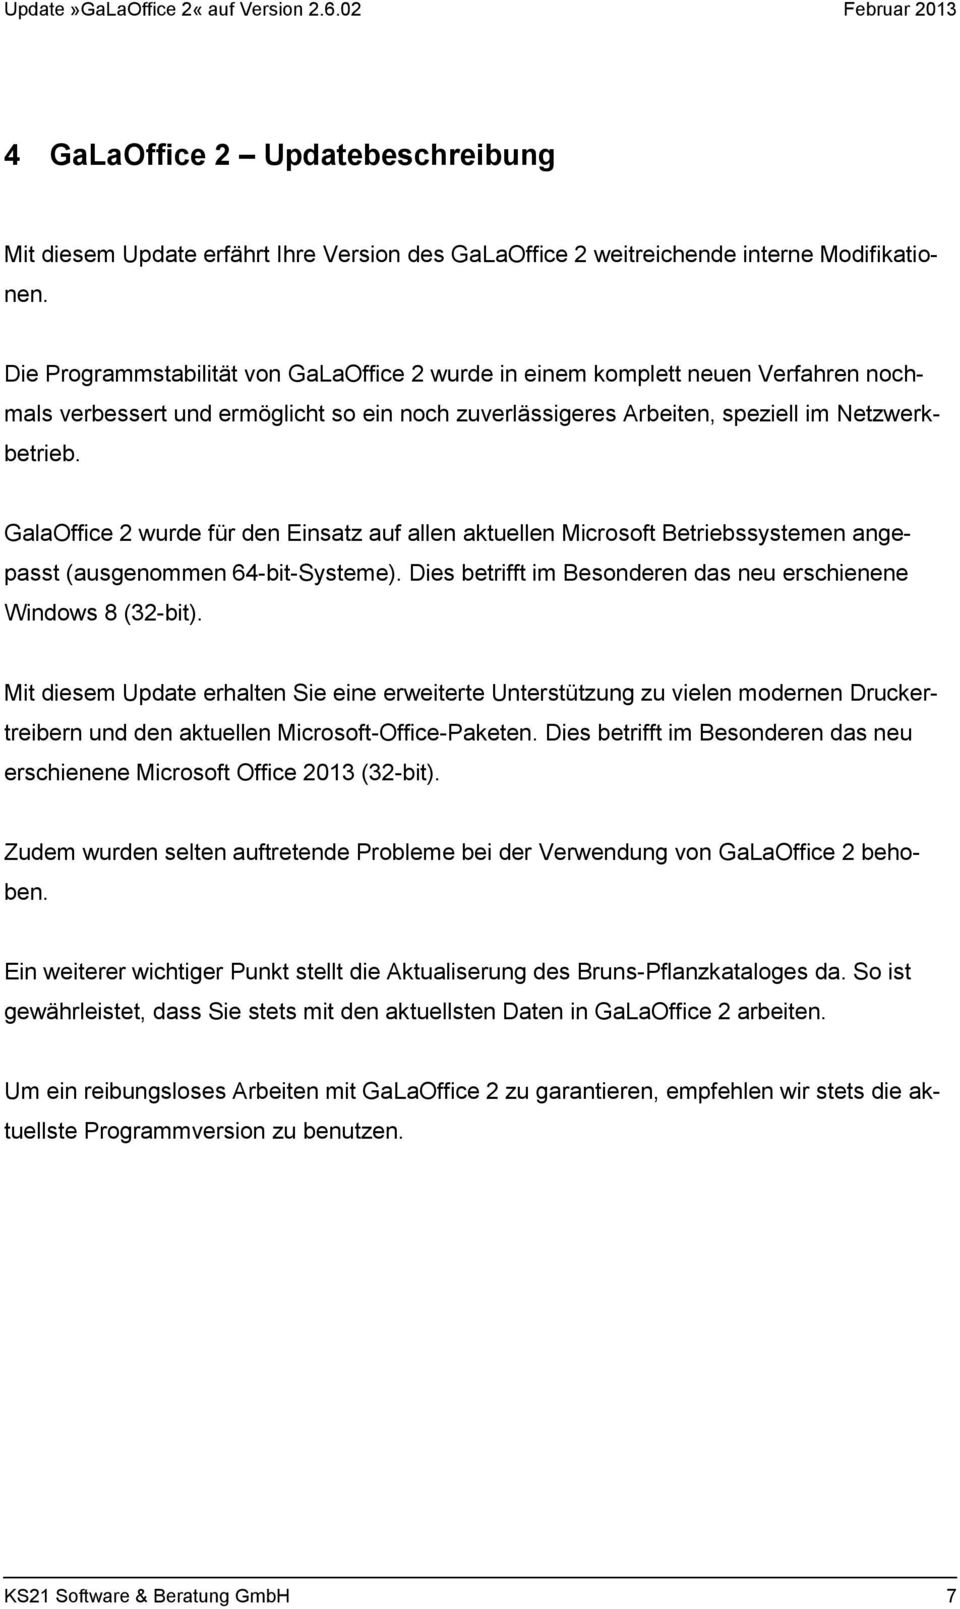 GalaOffice 2 wurde für den Einsatz auf allen aktuellen Microsoft Betriebssystemen angepasst (ausgenommen 64-bit-Systeme). Dies betrifft im Besonderen das neu erschienene Windows 8 (32-bit).